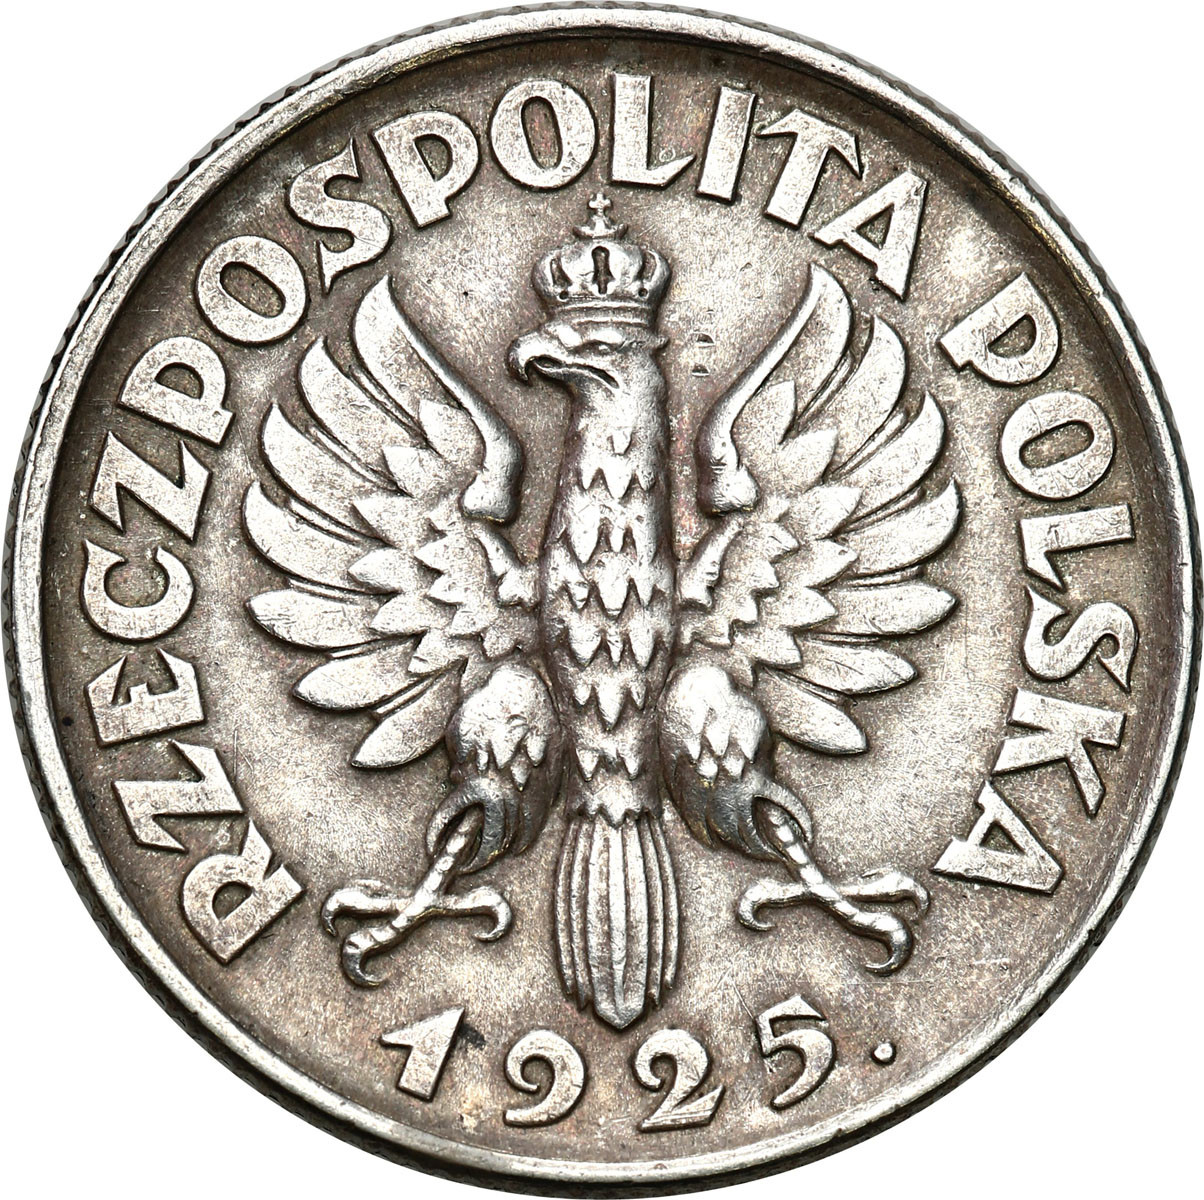 II RP. 1 złoty 1925, kropka po dacie, Londyn